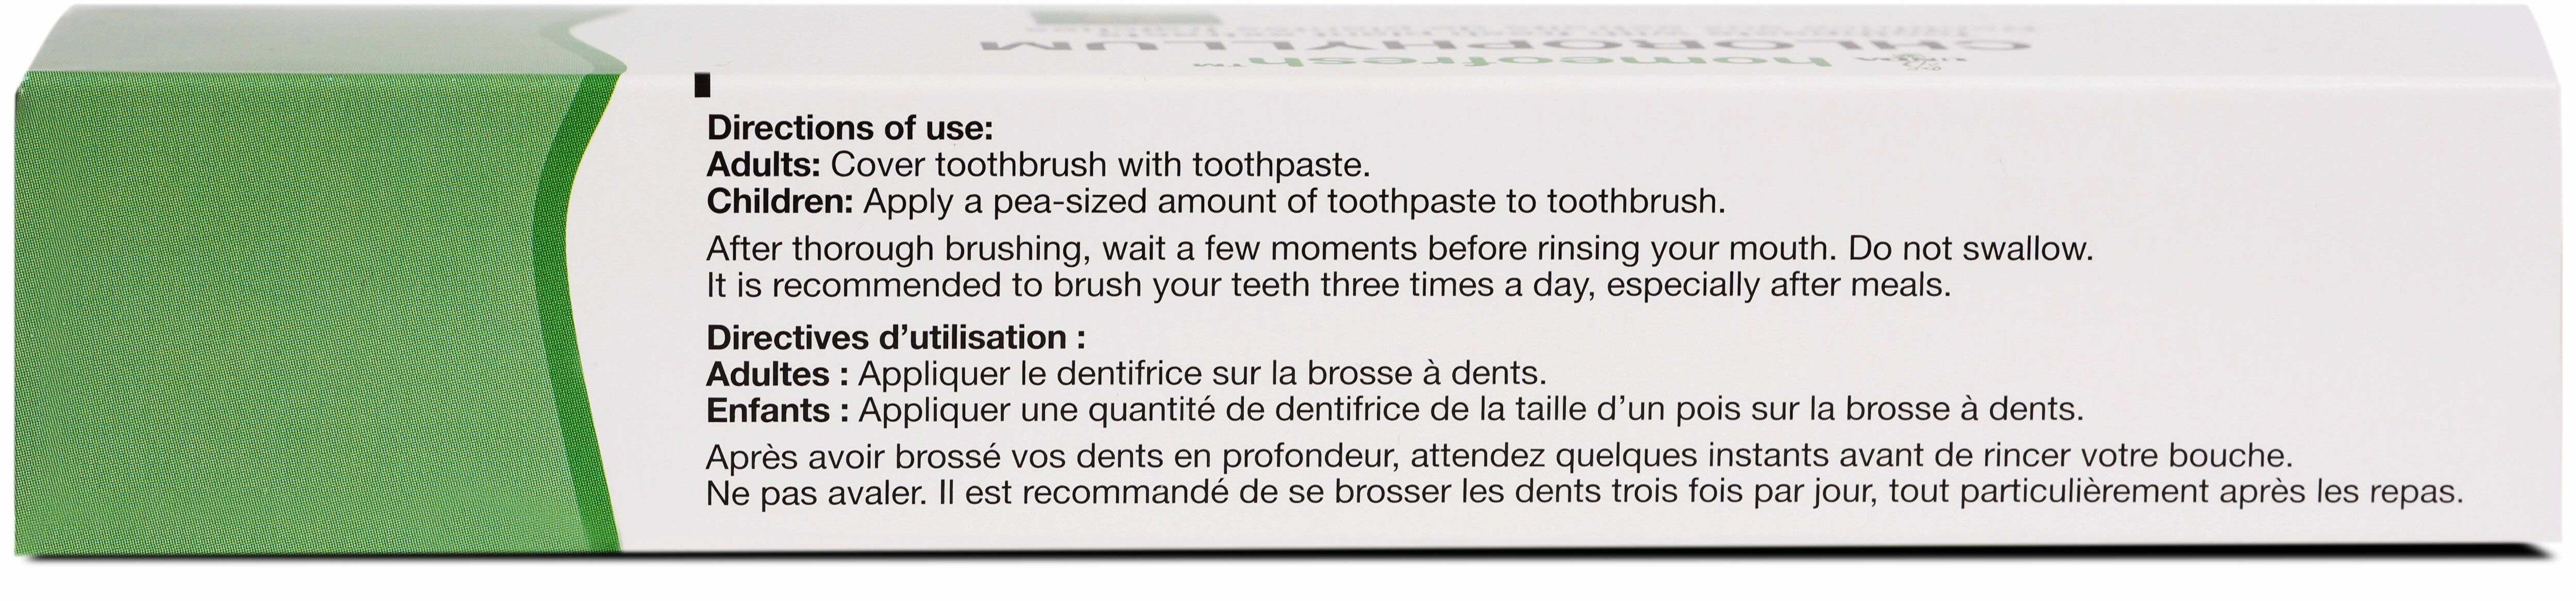 UNDA Homeofresh Toothpaste Chlorophyllum Ingredients